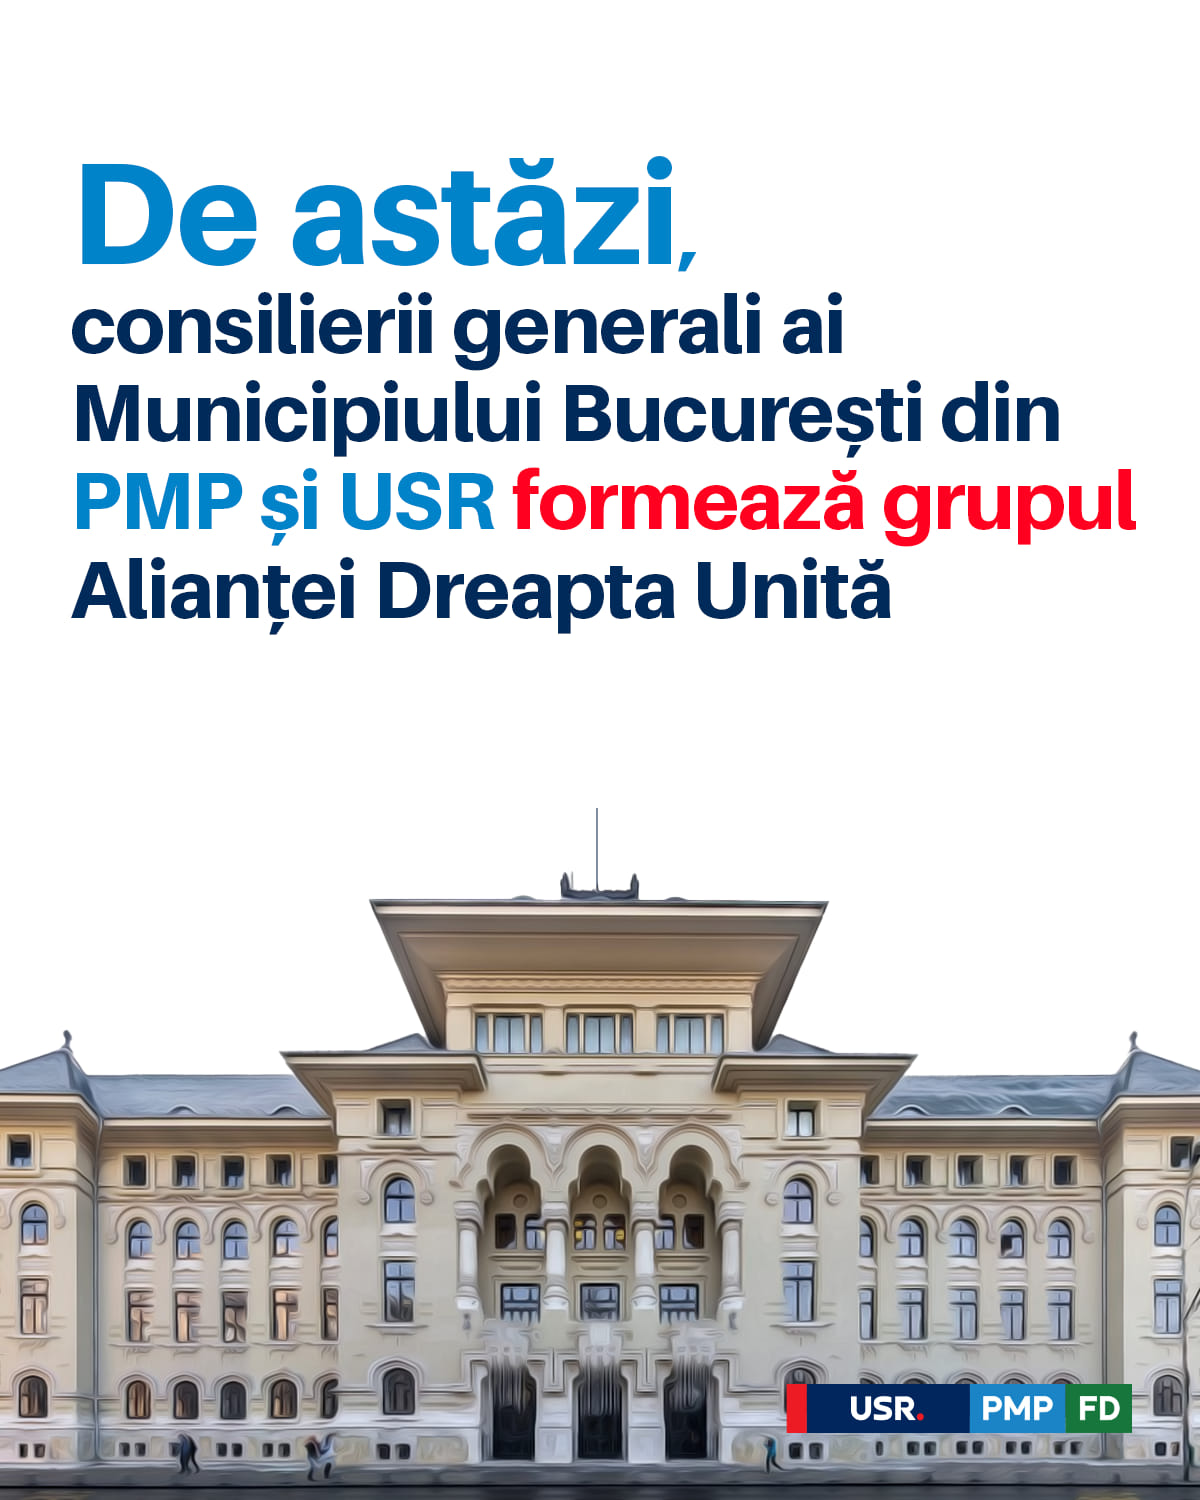 De astăzi, la Bucureşti, consilierii generali ai PMP și USR vor forma grupul Alianței Dreapta Unită